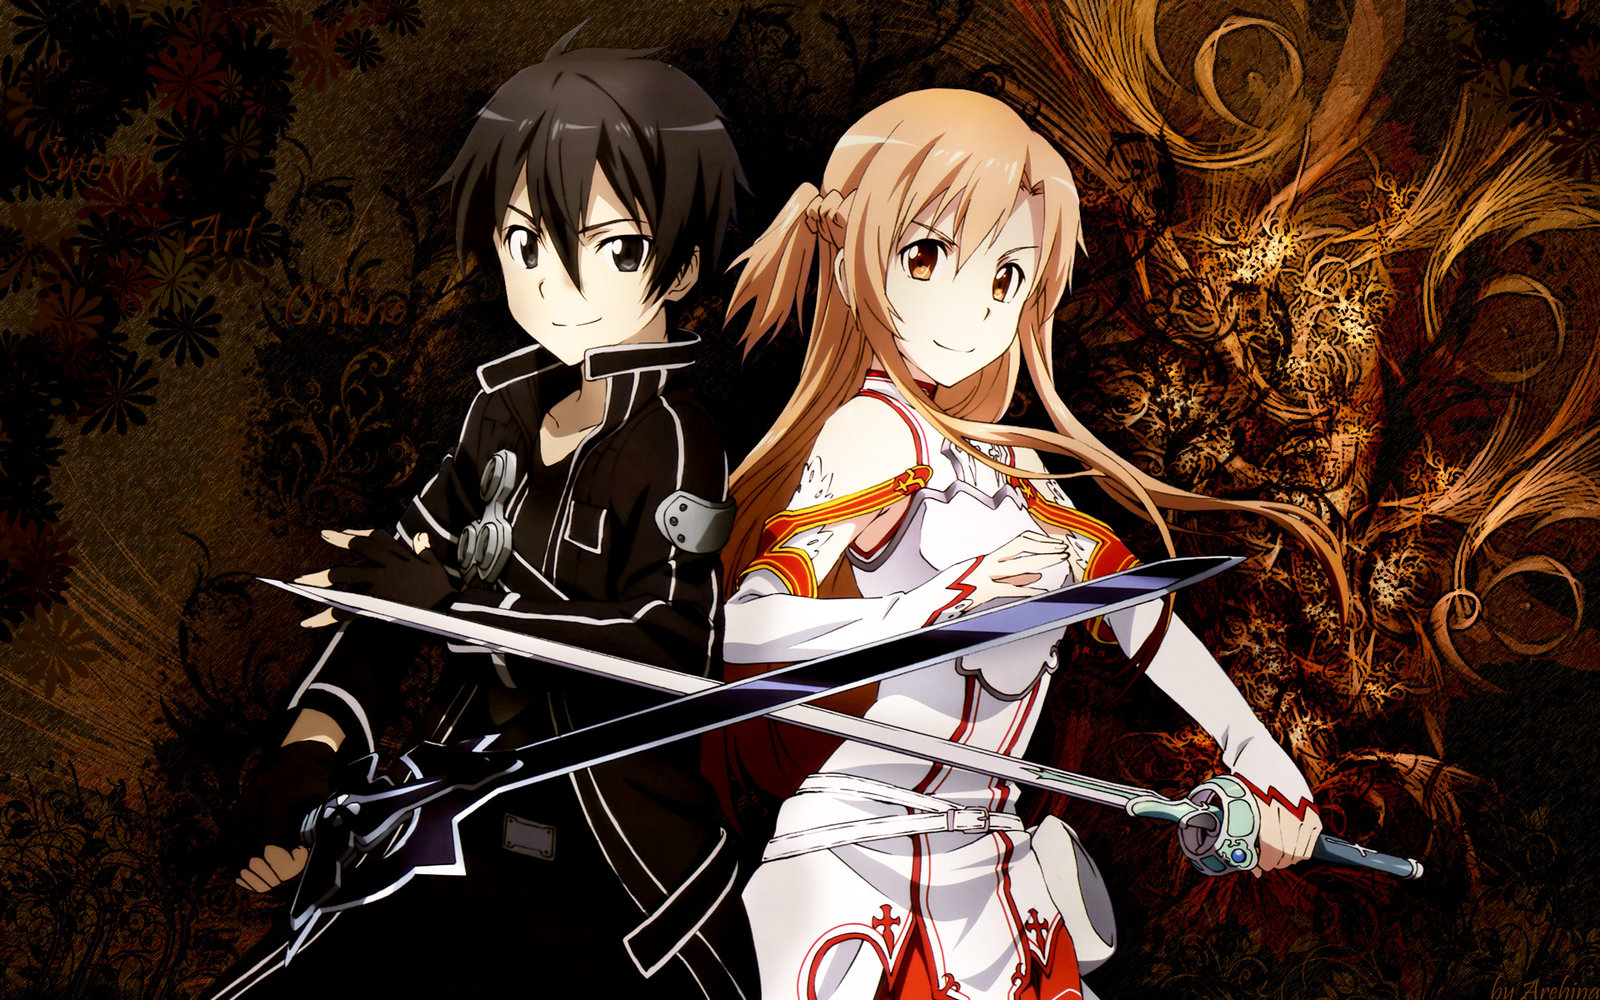 Kirito And Asuna Sword Art Online: Hãy đến và xem bức tranh liên quan đến Kirito và Asuna Sword Art Online - một cặp đôi lãng mạn trong cảm xúc và sức mạnh. Câu chuyện tình yêu của hai nhân vật sẽ khiến bạn đắm chìm trong thế giới giả tưởng và gợi lên những cảm xúc thật sâu sắc.